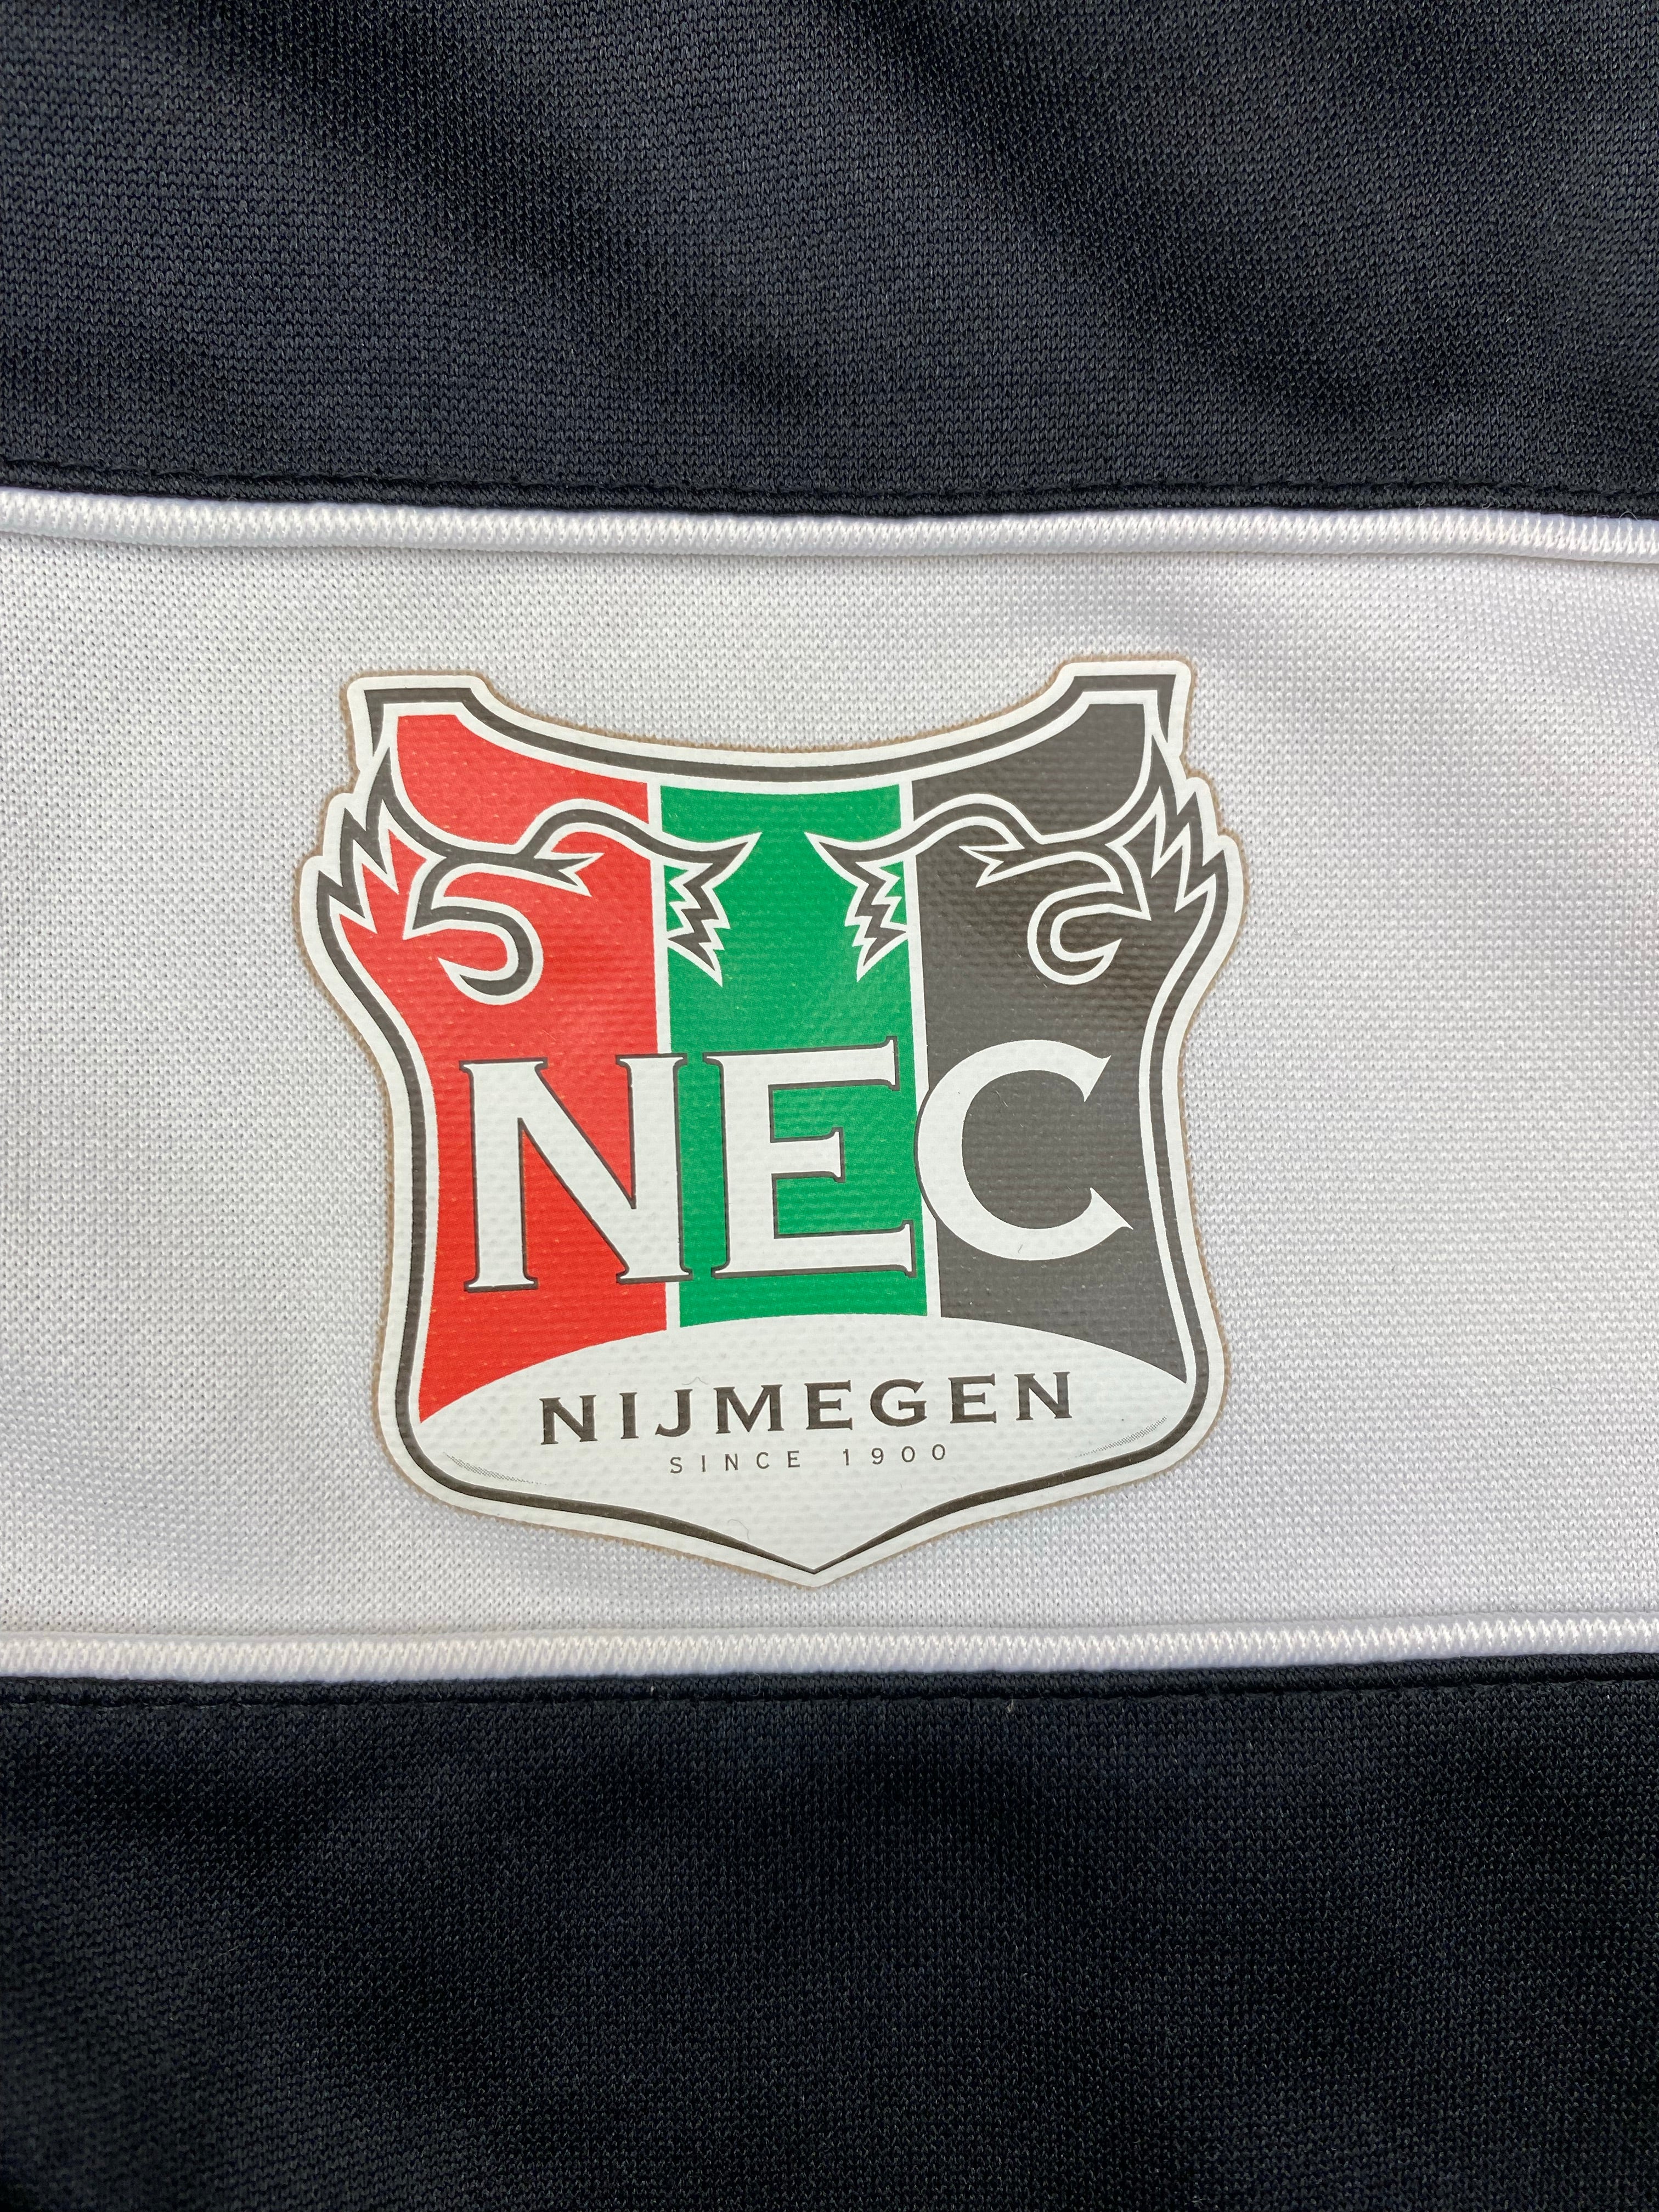 Veste de survêtement NEC Nimègue 2014/16 (S) 9/10